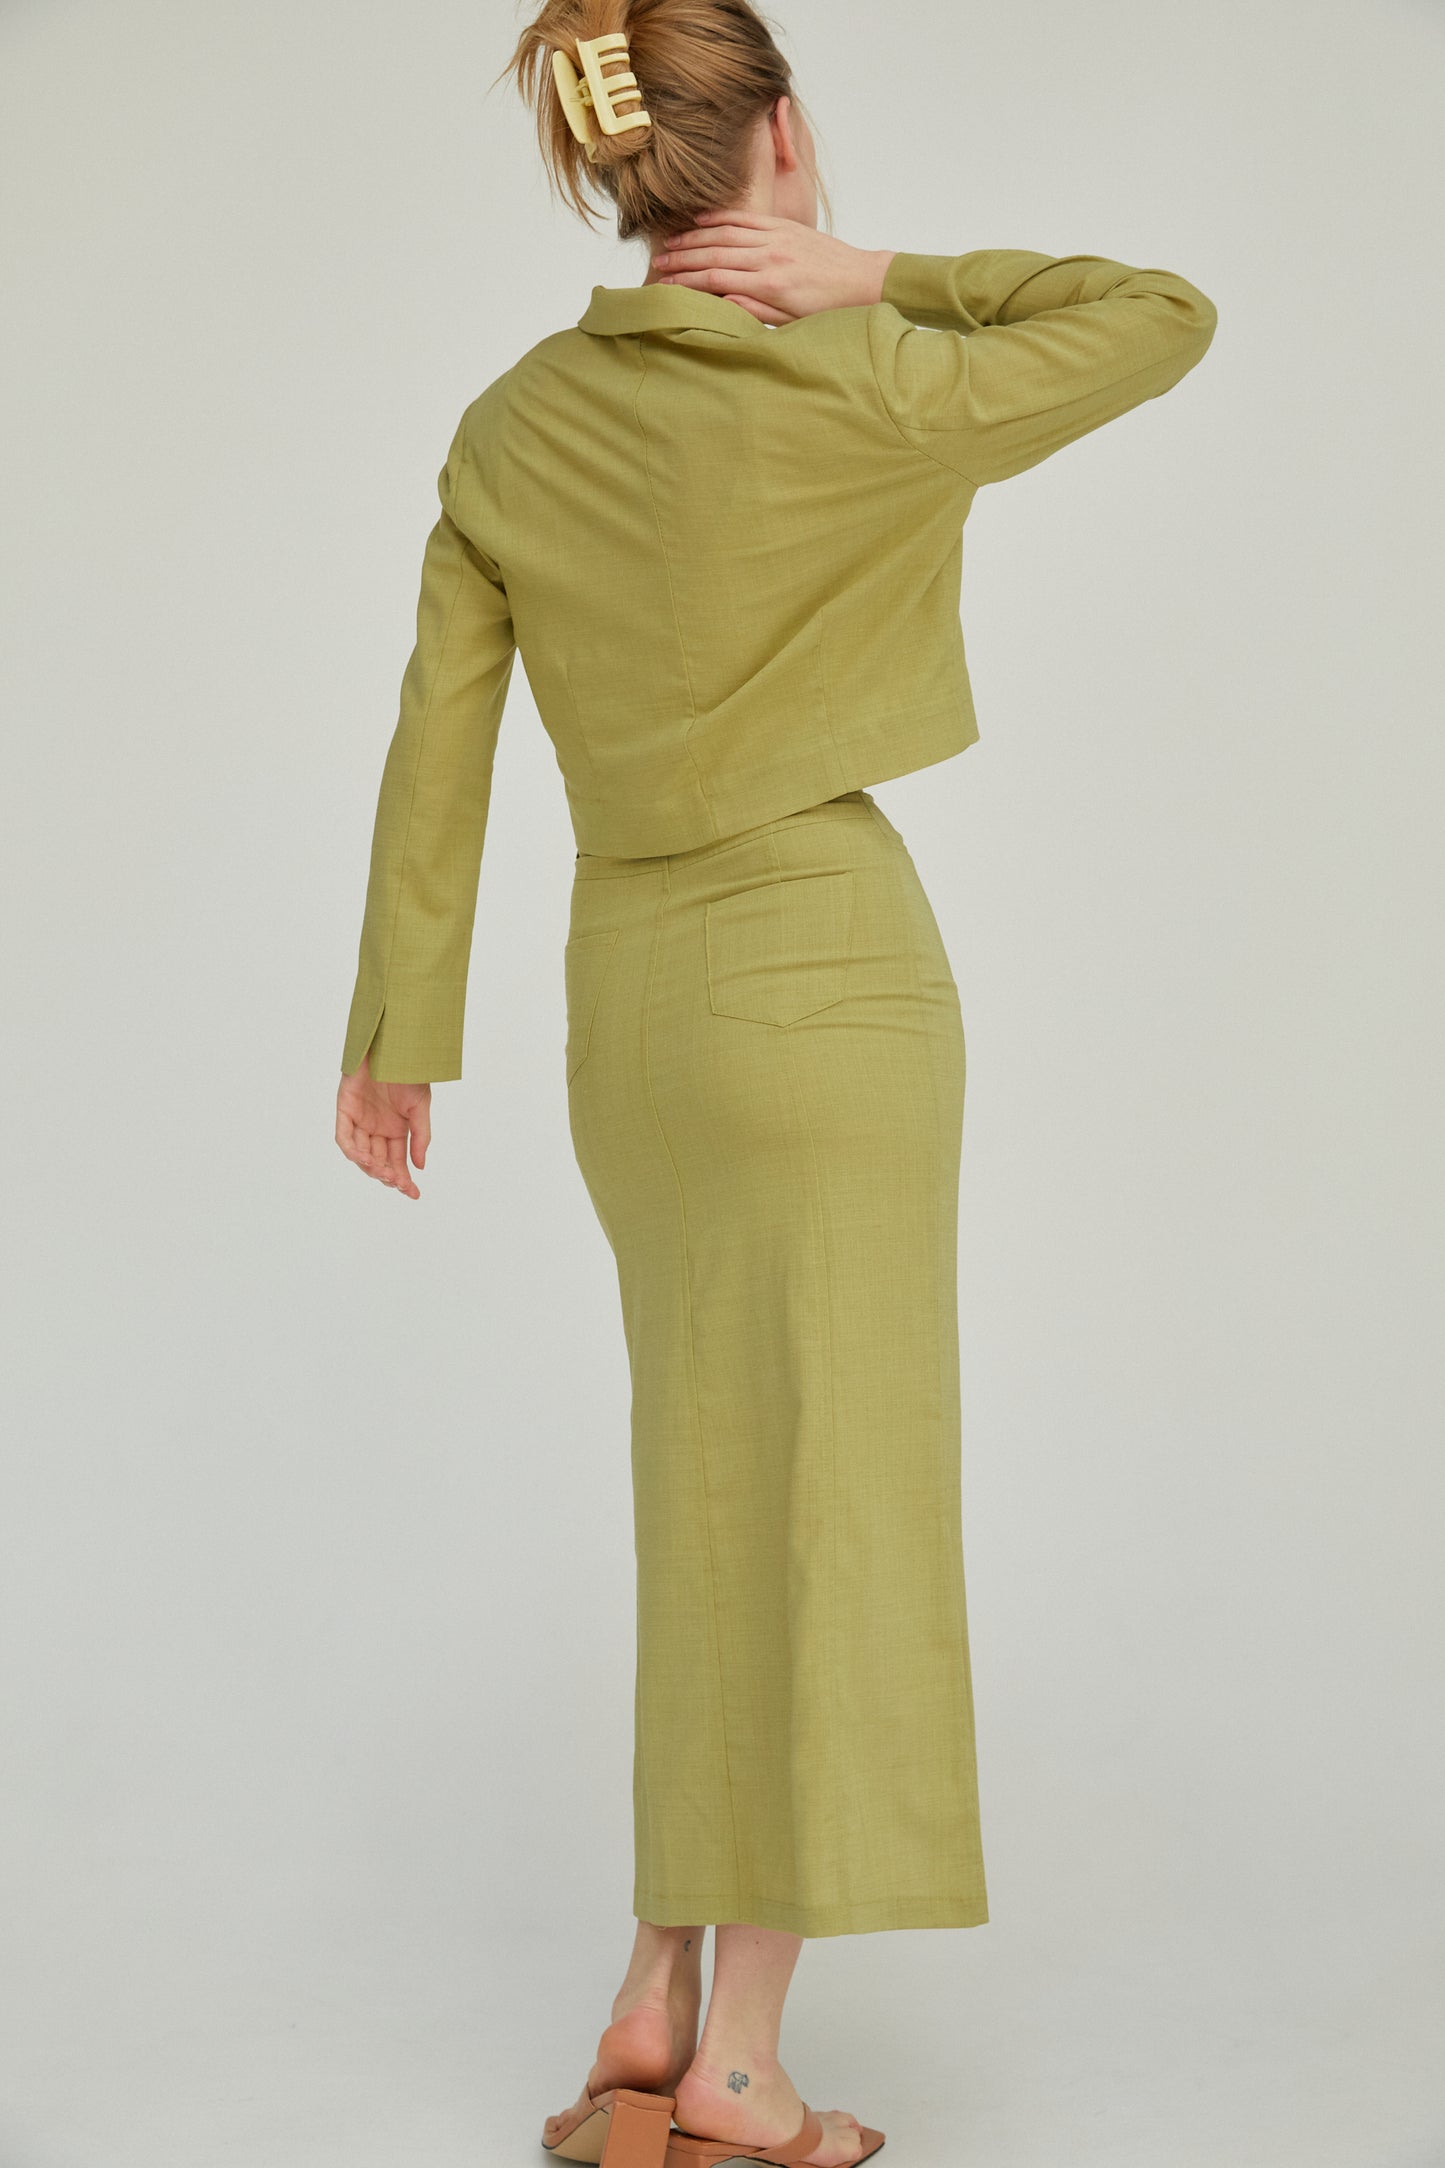 90's Inspired Midi Skirt, Olive Green